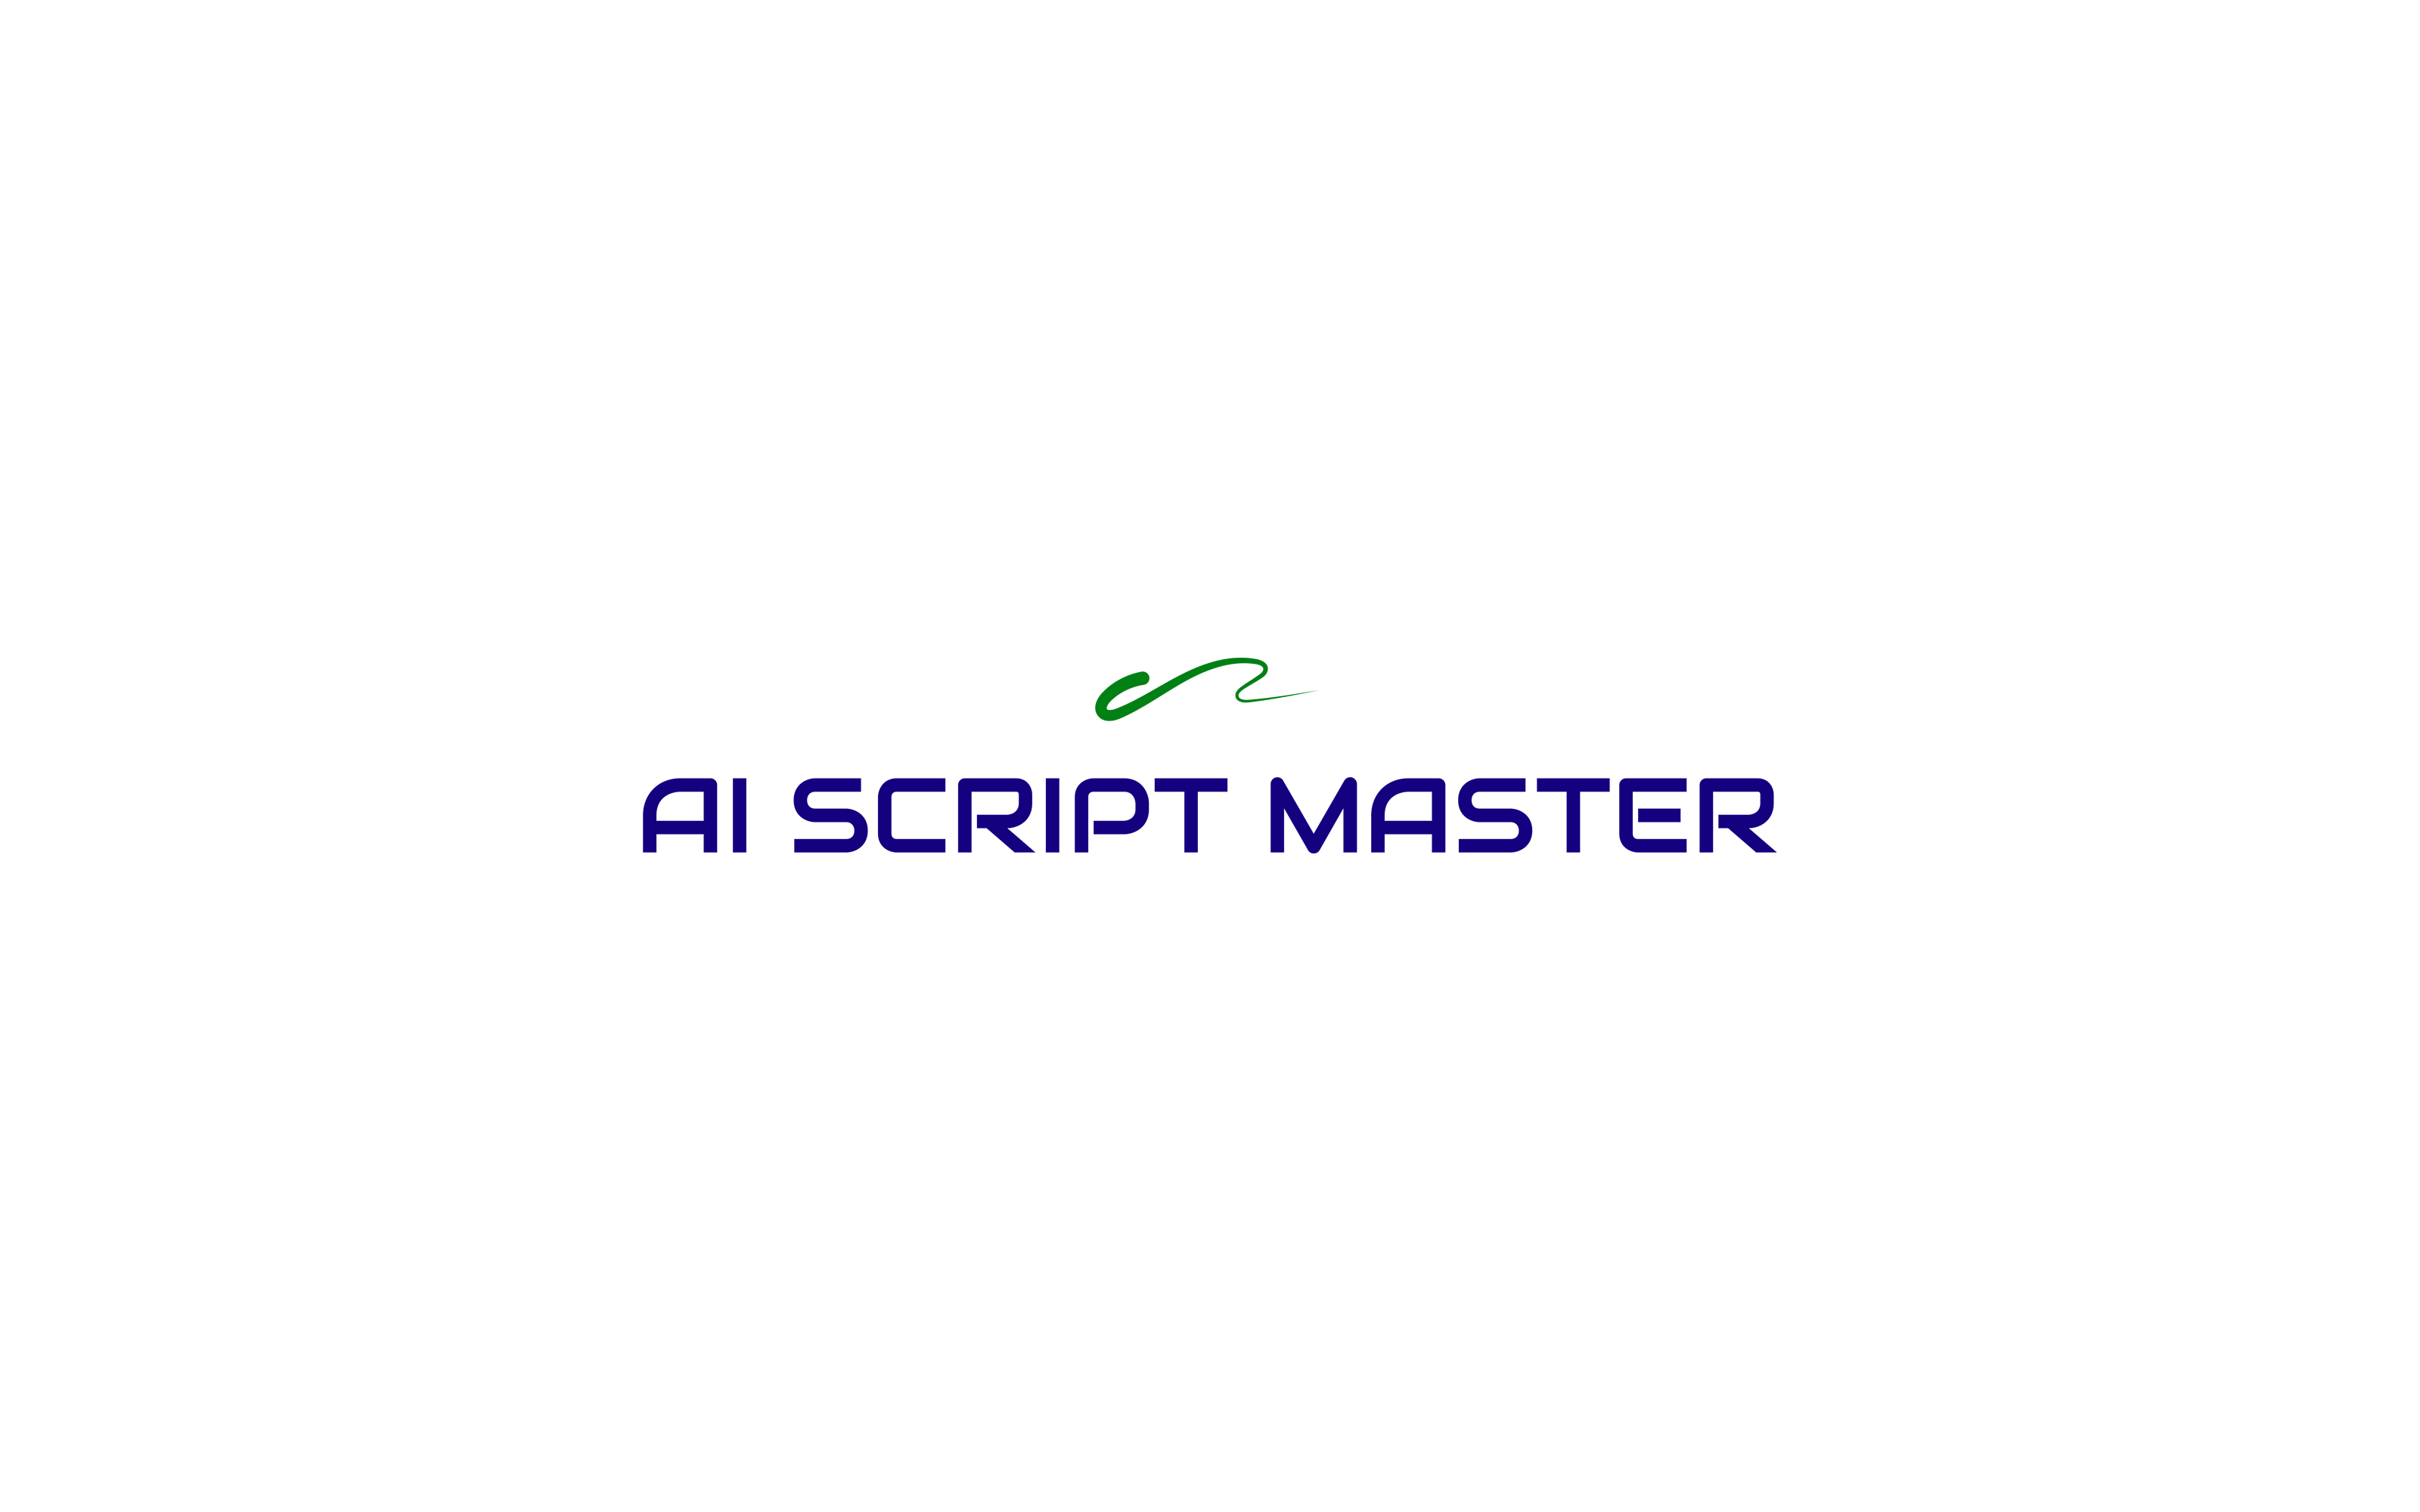 Ai Script Master